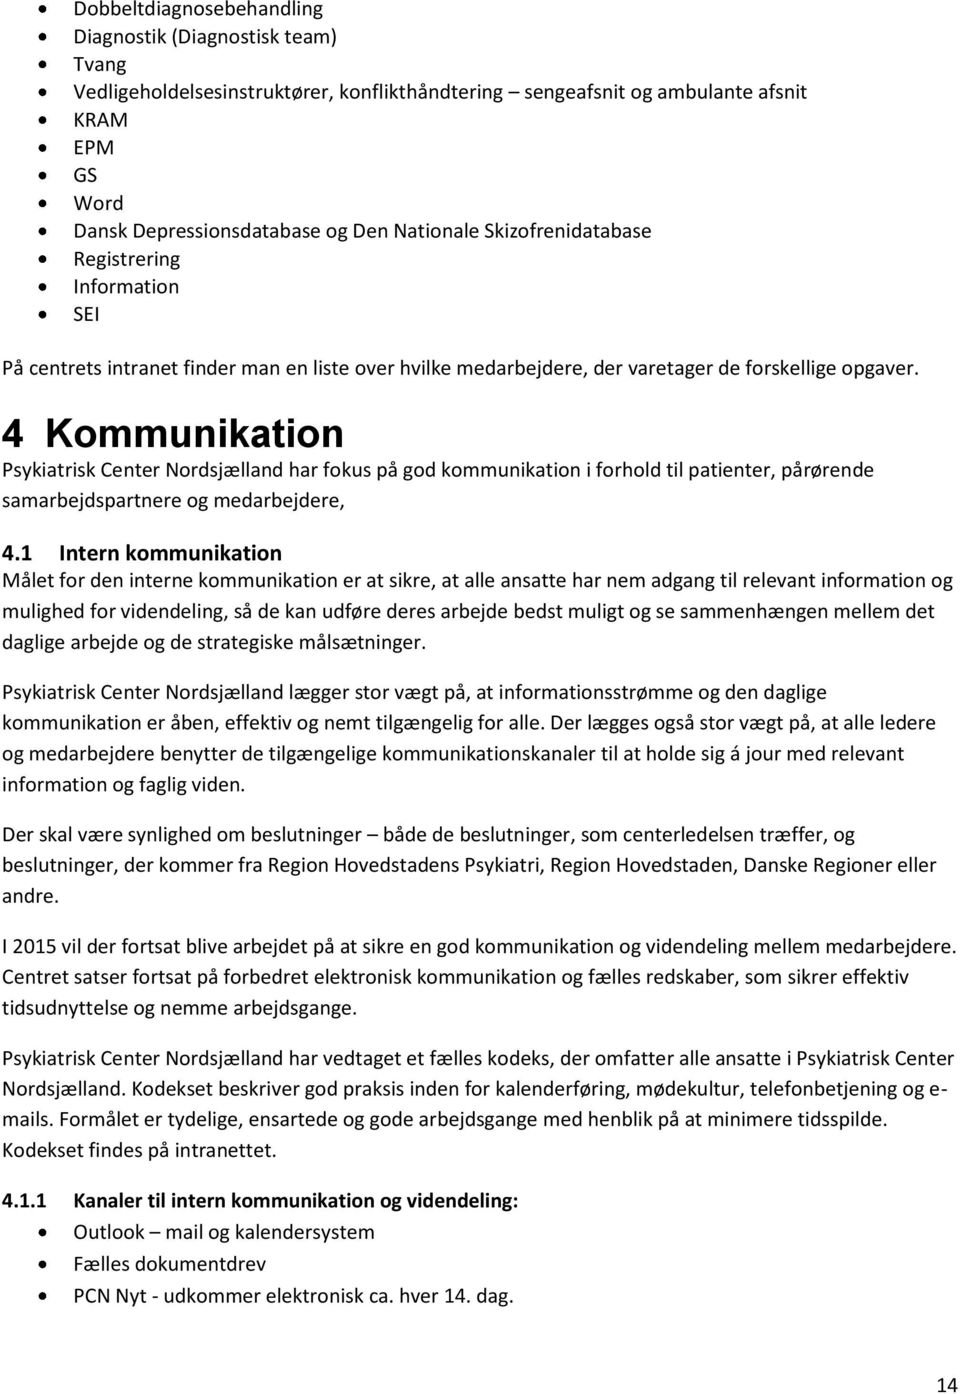 4 Kommunikation Psykiatrisk Center Nordsjælland har fokus på god kommunikation i forhold til patienter, pårørende samarbejdspartnere og medarbejdere, 4.